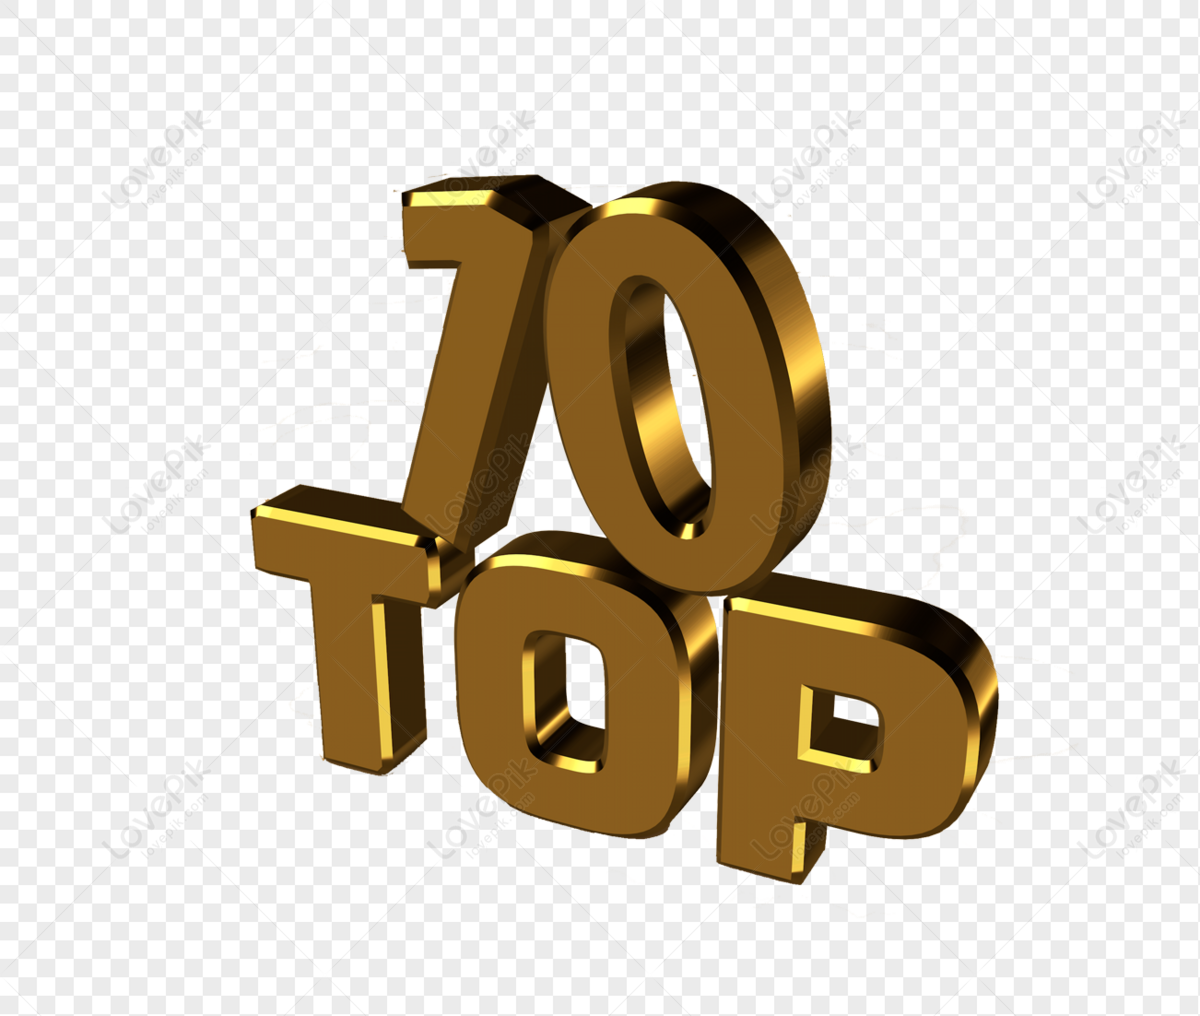 Top10 PNG Imagens Gratuitas Para Download - Lovepik